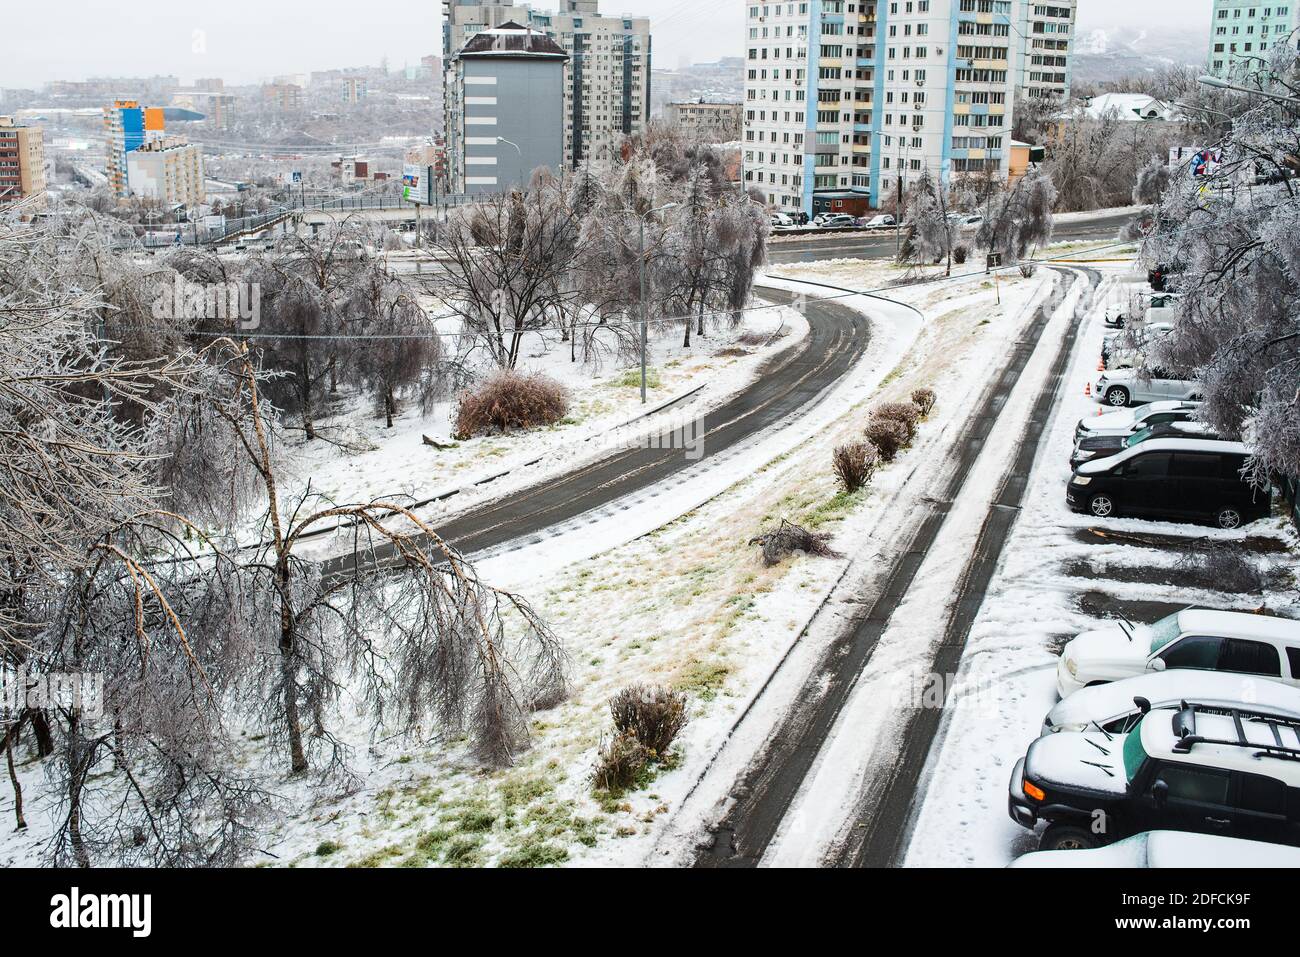 Blick auf die Stadt und die Straßen bei schlechtem Schneewetter. Autos mit Eis, Schnee und Eiszapfen bedeckt. Eissturmzyklon. Frostige Szenen im Winter. Stockfoto